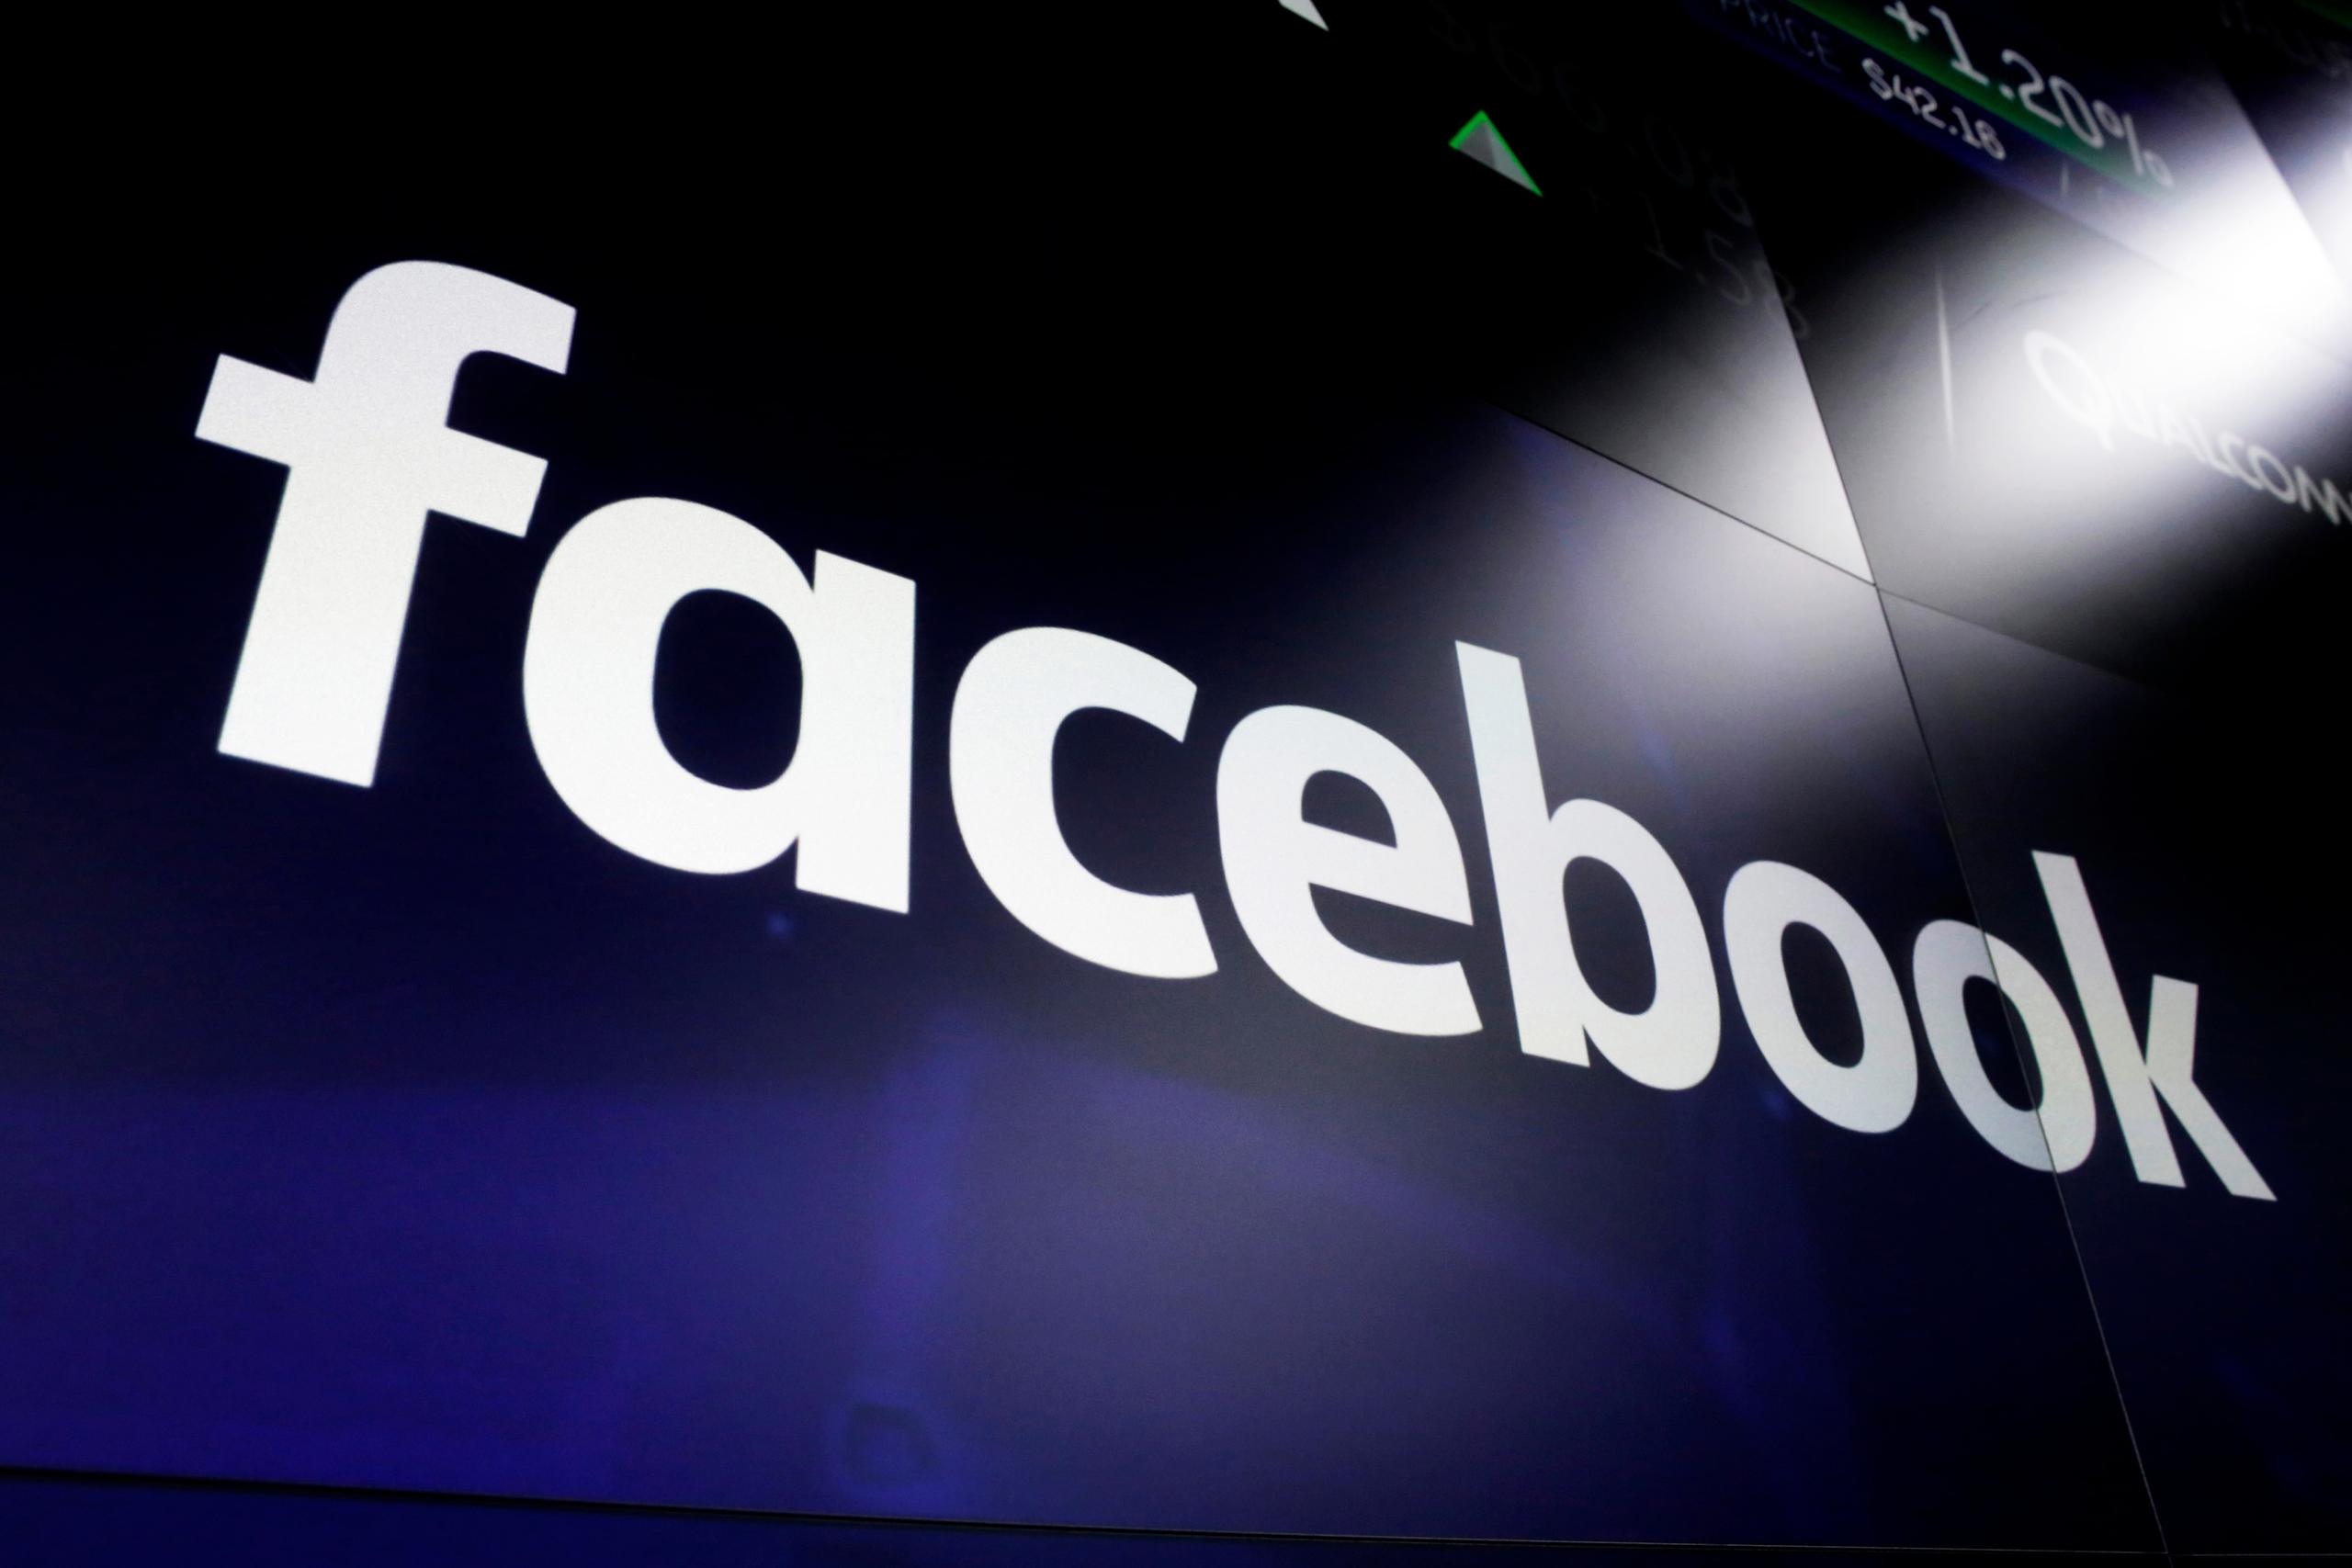 Facebook eliminó entre enero y marzo 1,700 millones de cuentas falsas, casi 10 millones de contenidos que incitaban al odio, 40 millones de contenidos explícitamente sexuales o nudistas, 25.5 millones de mensajes con violencia gráfica y 2.3 millones de mensajes en los que se acosaba a otros usuarios.